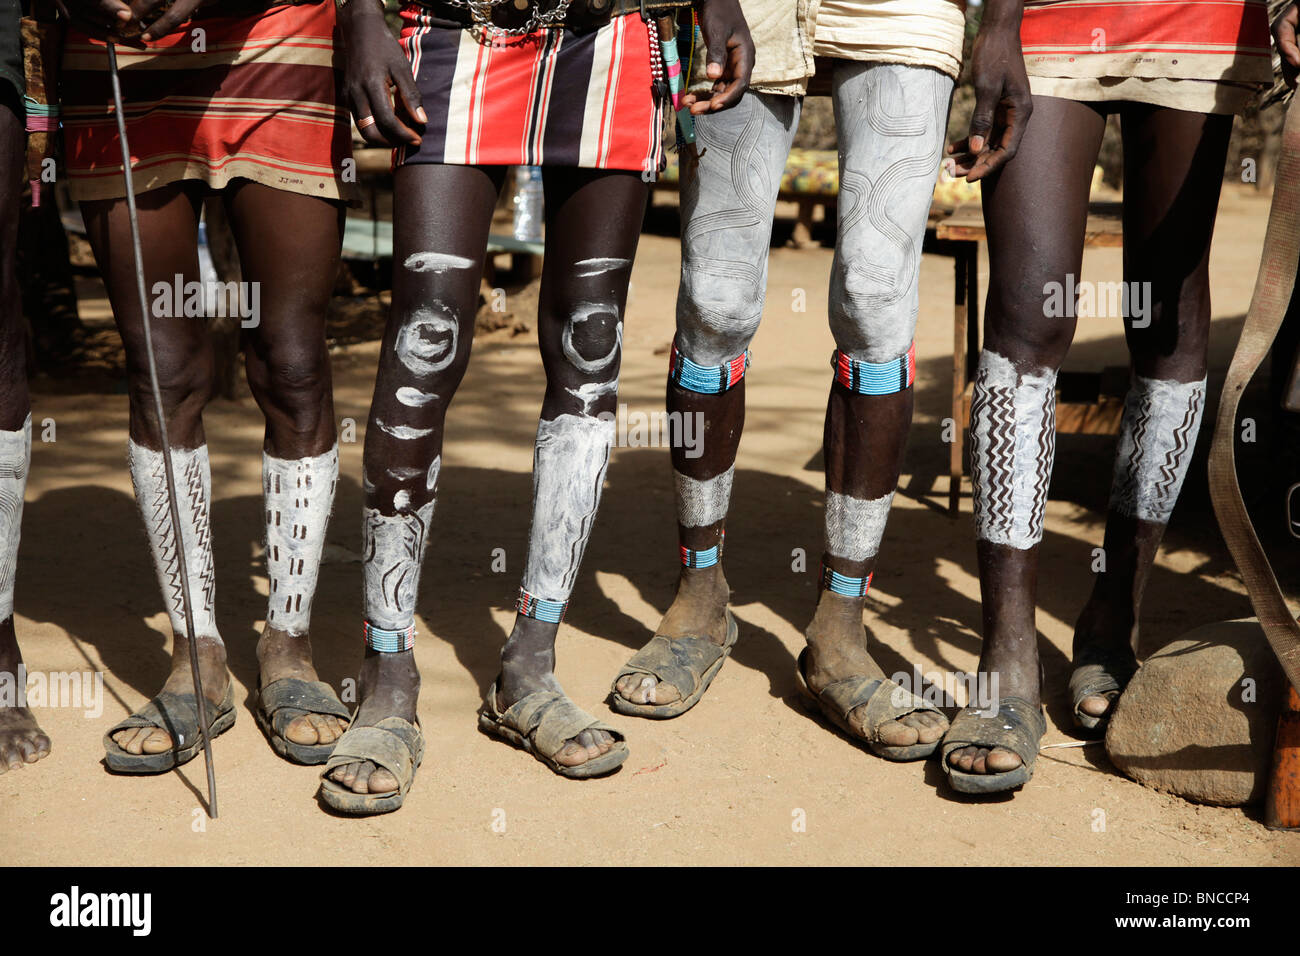 Tsemai hombres procedentes del sur de Etiopía están mostrando su pierna body painting Foto de stock